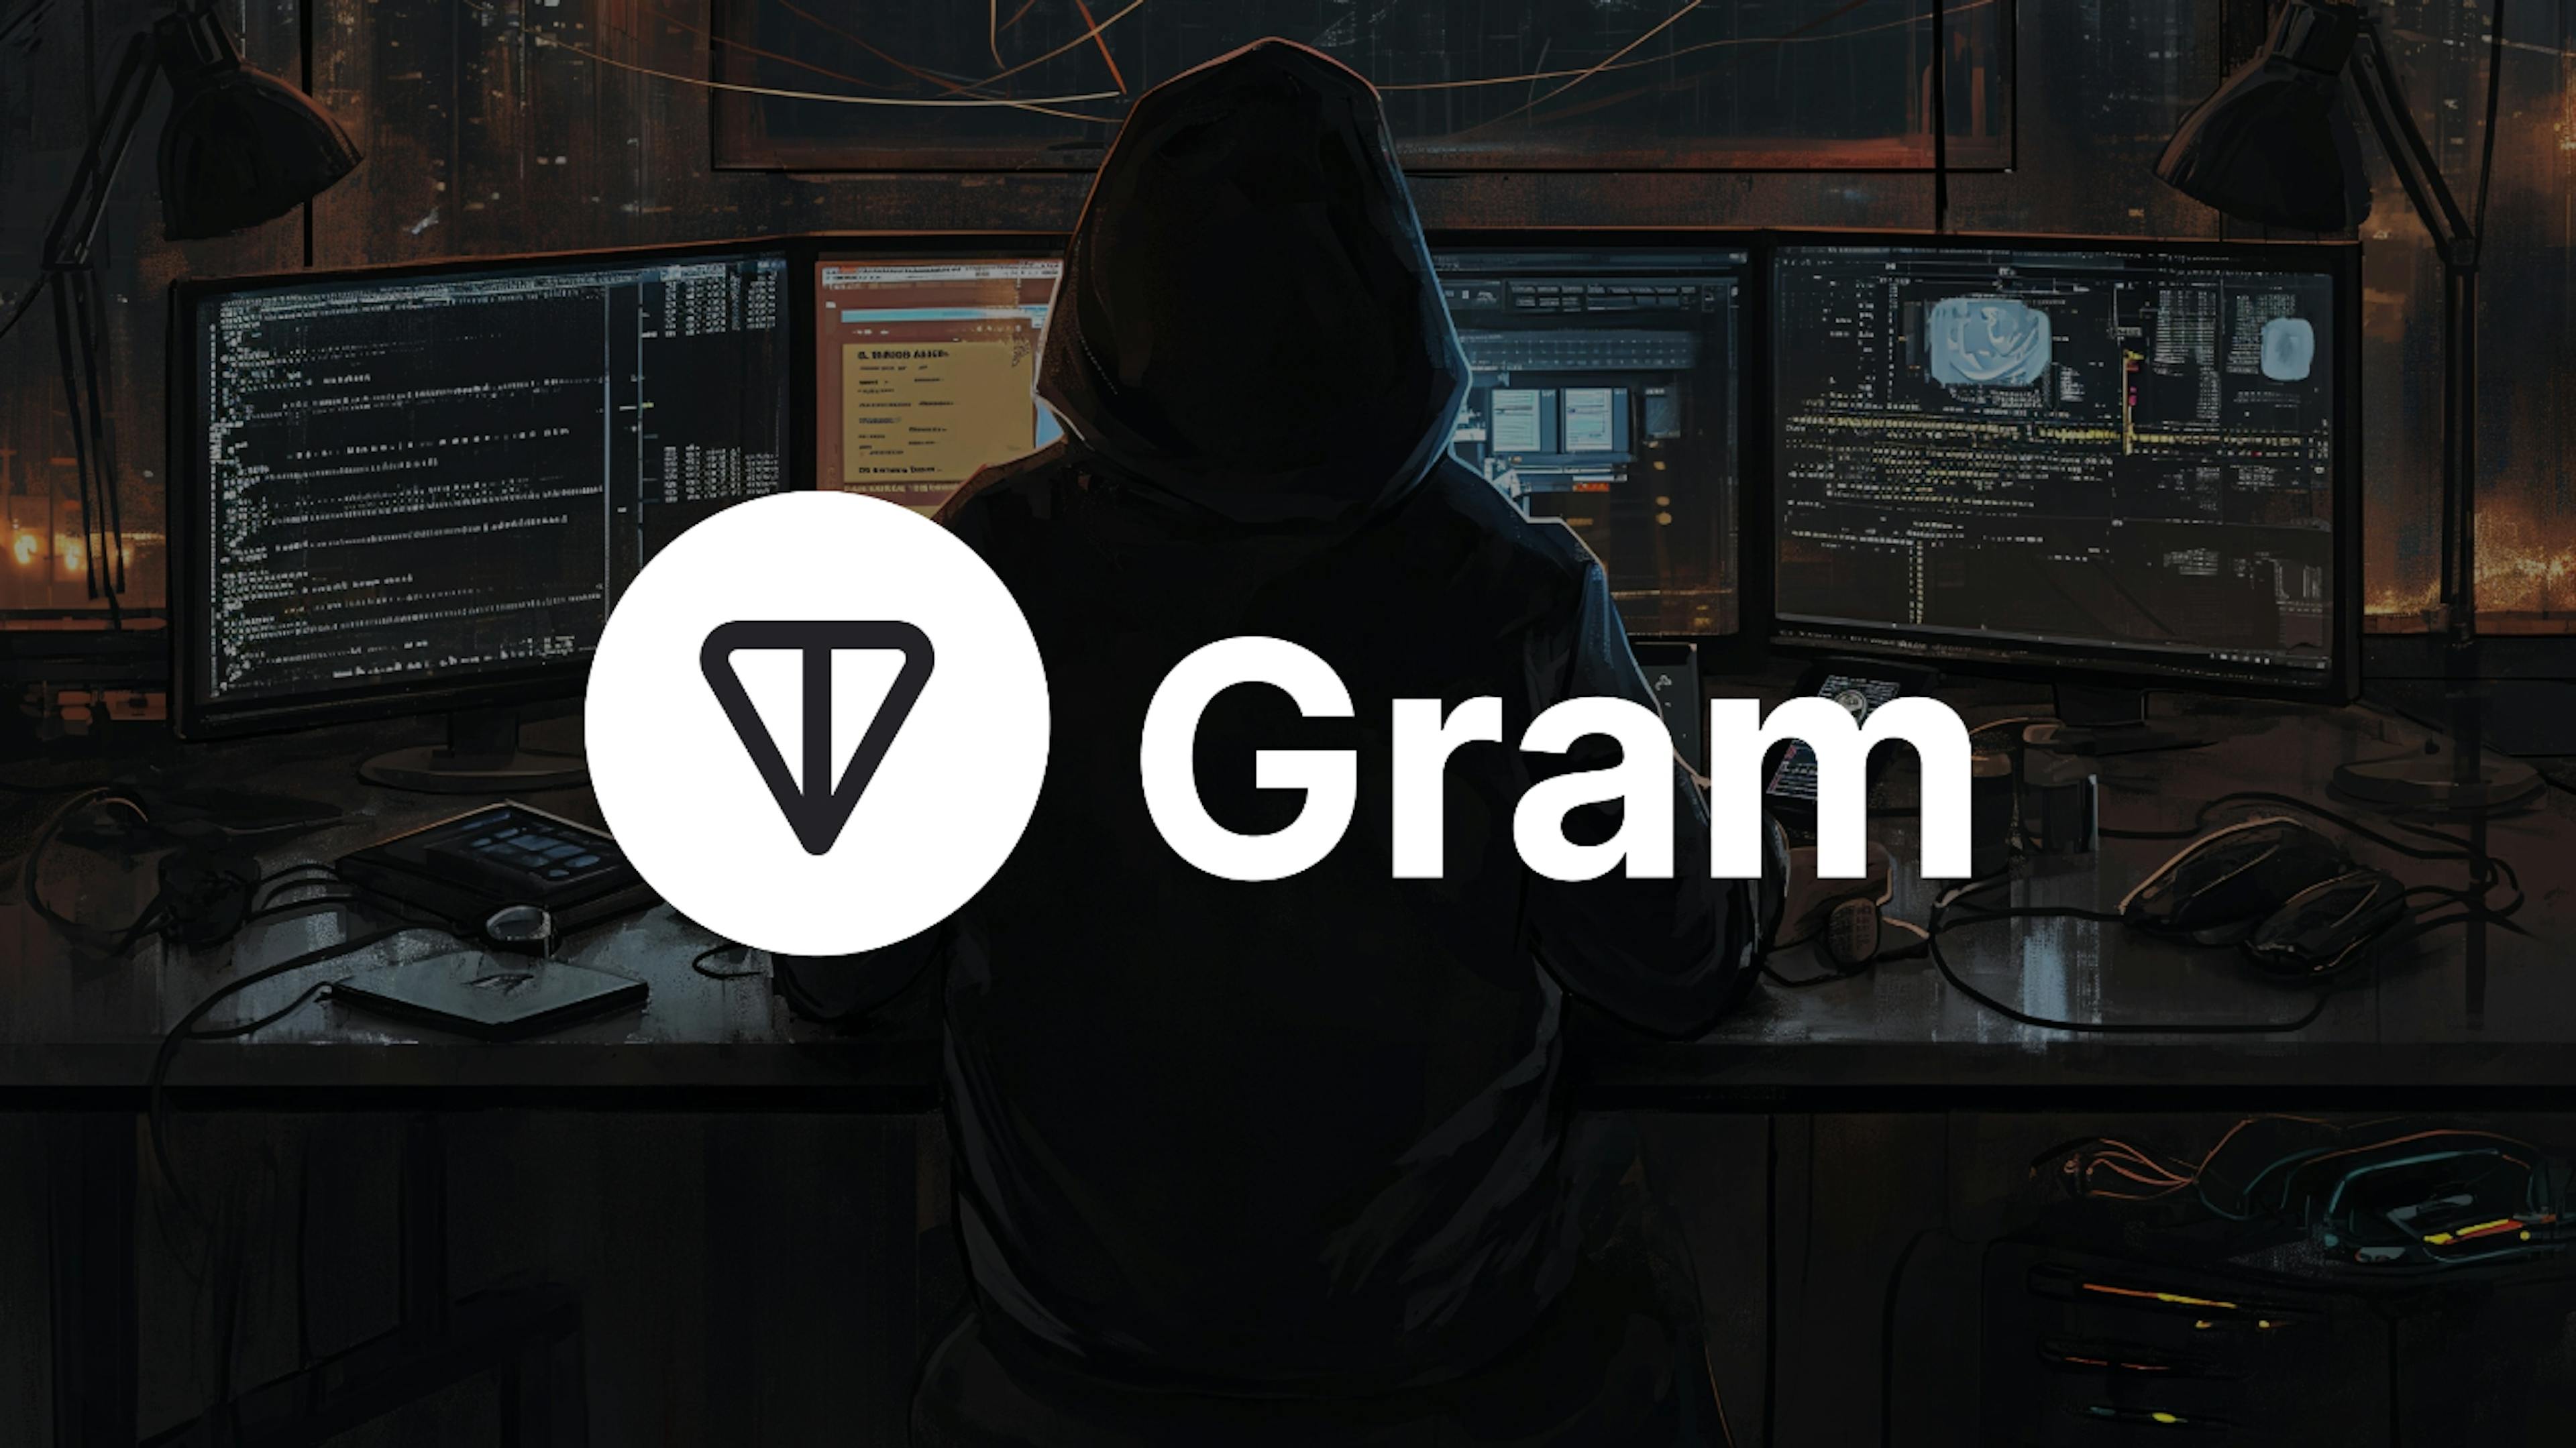 featured image - O GRAM “Novo Bitcoin no Telegram” aumenta 28.000 vezes de preço em apenas 3 meses após o lançamento